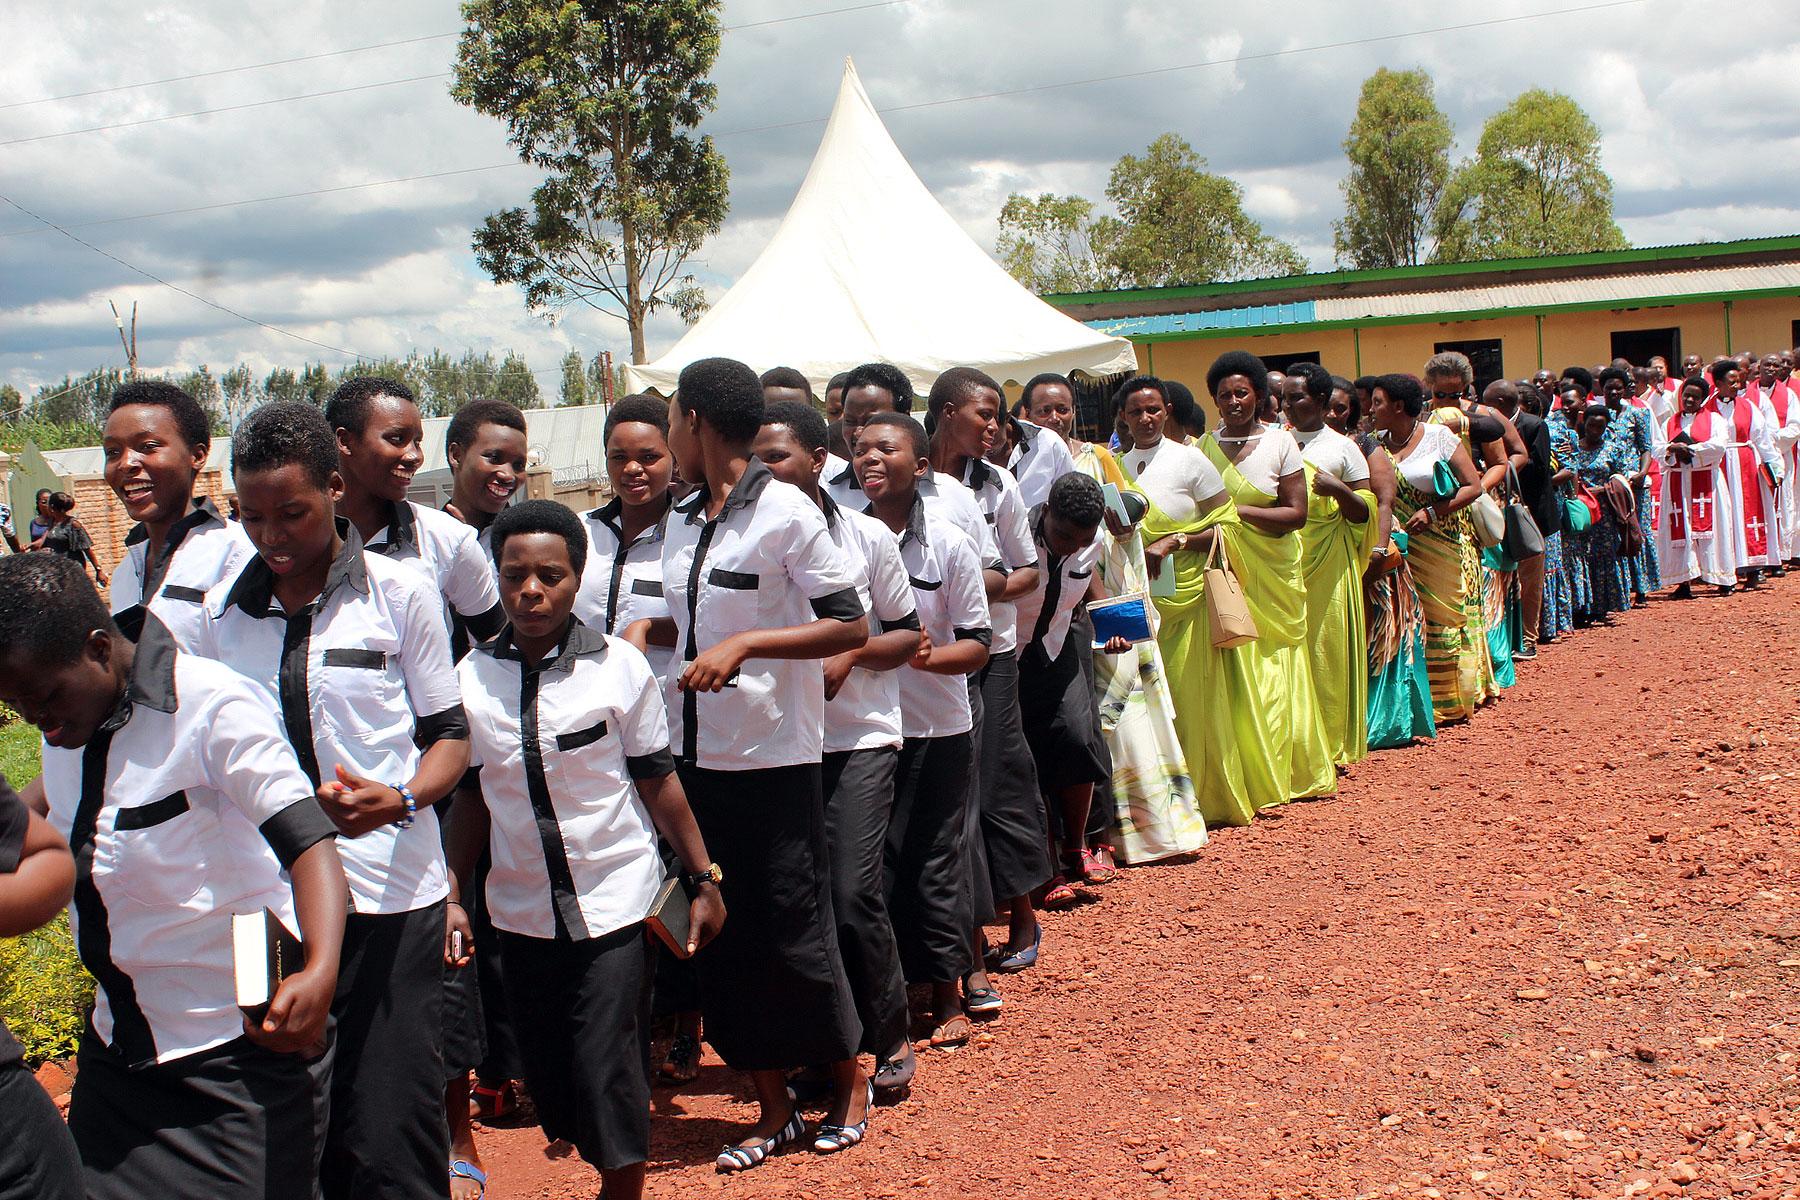 Lutherische Gläubige in der Gemeinde in Kirehe in Ruanda singen und tanzen während der Feierlichkeiten anlässlich des 25-jährigen Bestehens ihrer Kirche. Fotos: Neng‘ida Johaness-Lairumbe/ELKT